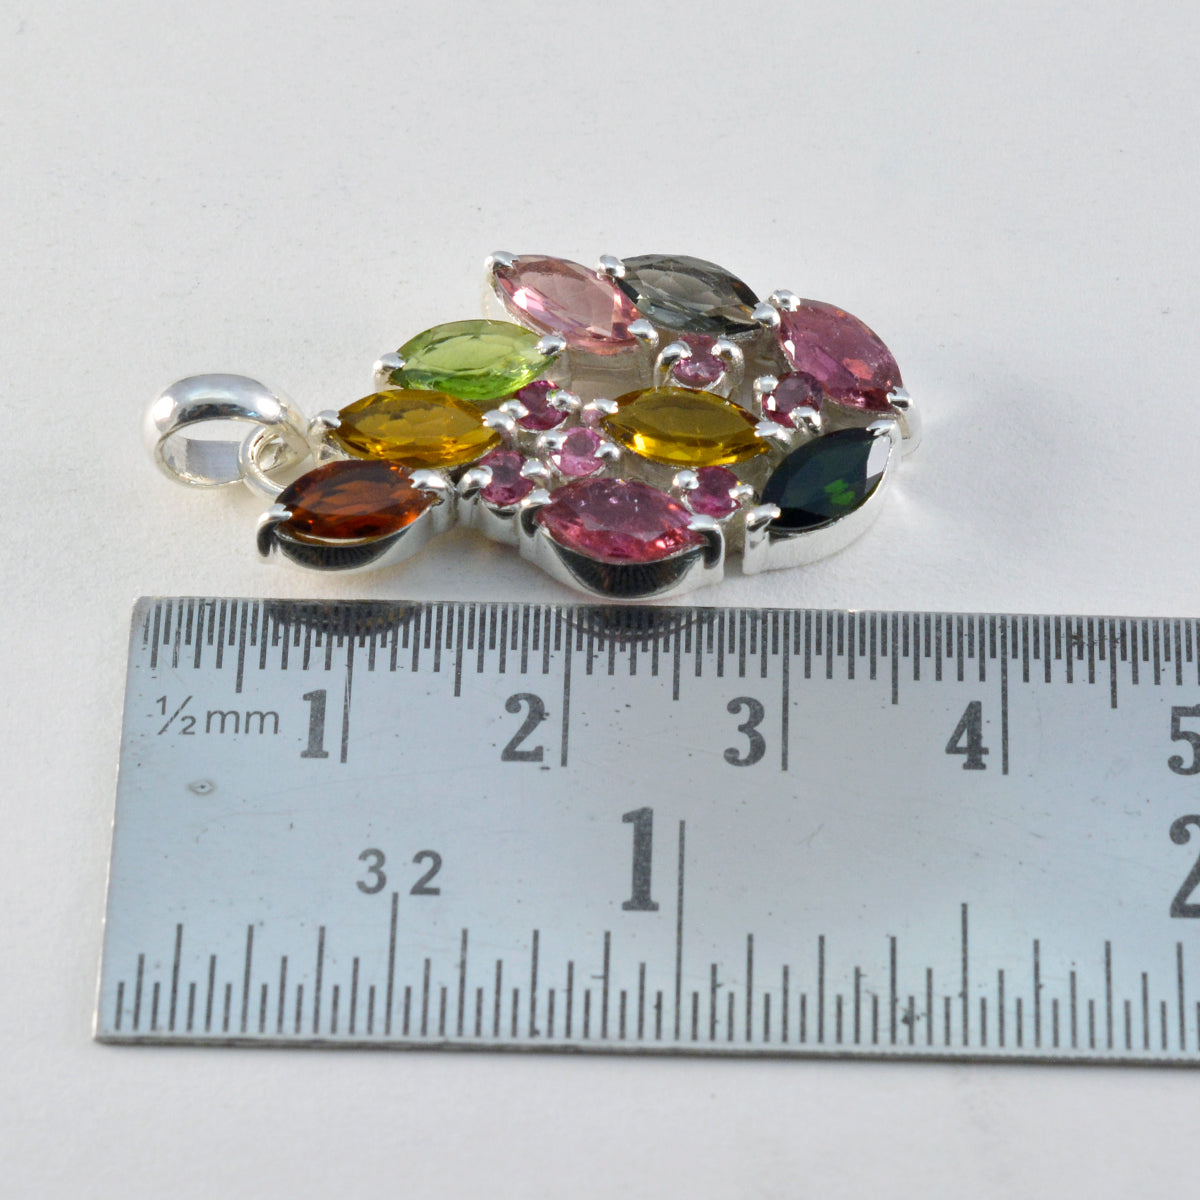 Riyo – pierres précieuses séduisantes, marquise, pendentif tourmaline multicolore à facettes en argent massif, cadeau d'anniversaire